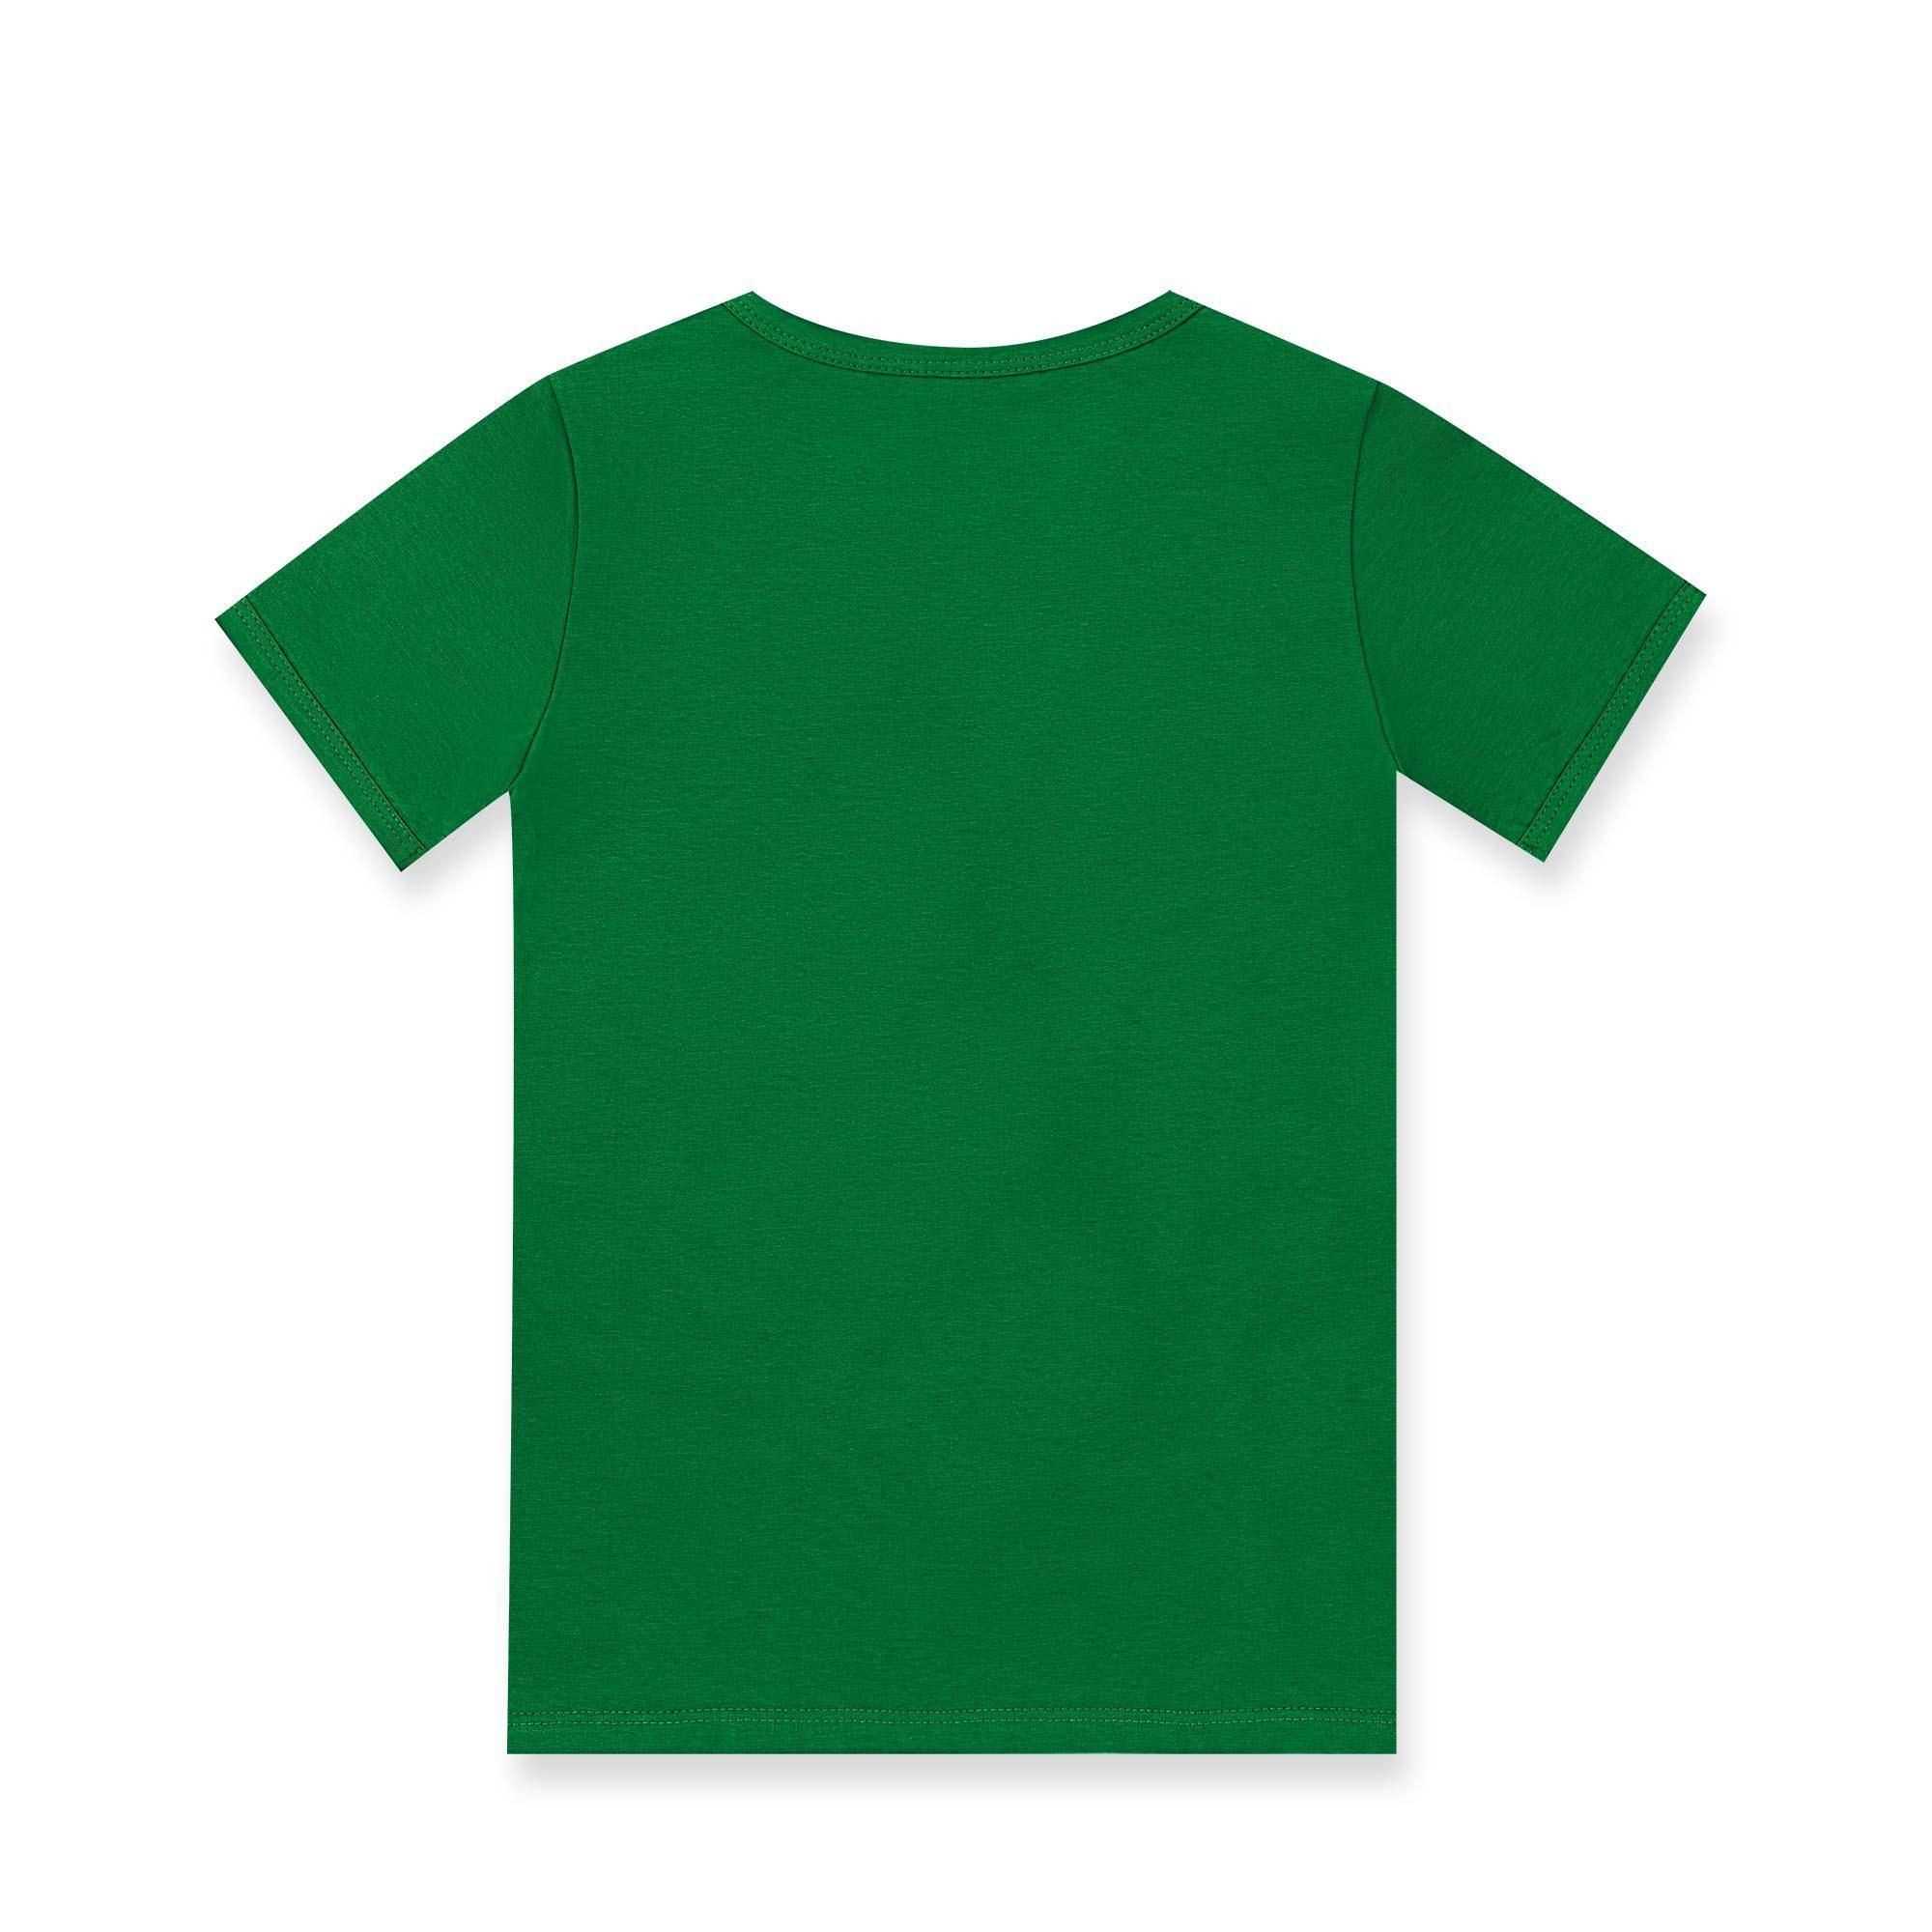 Miętowo-zielona koszulka dwukolorowa Junior